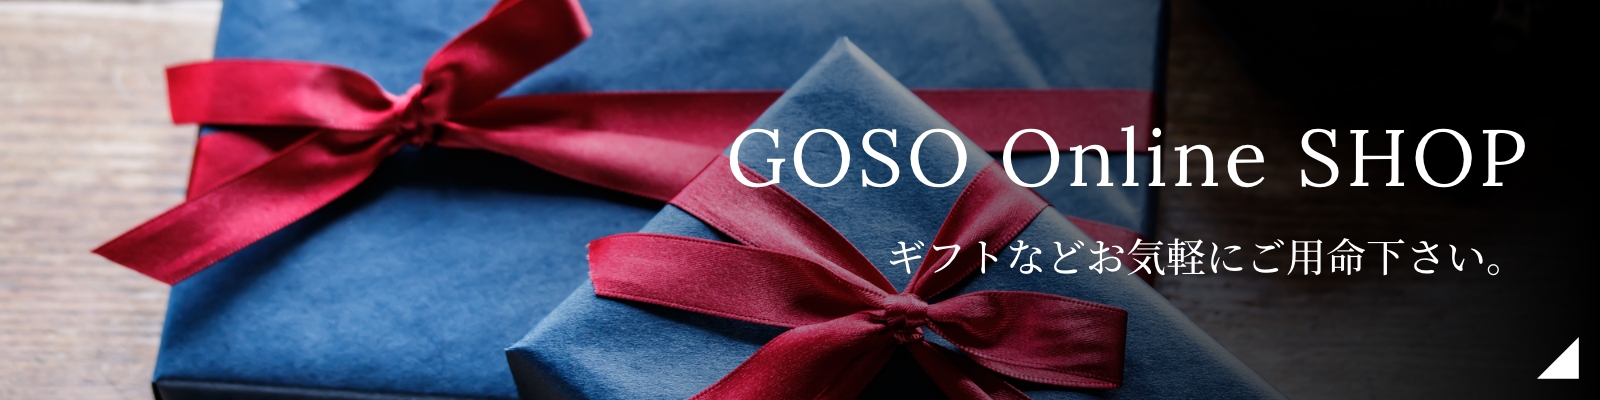 GOSO Online SHOP ギフトなどお気軽にご用命下さい。